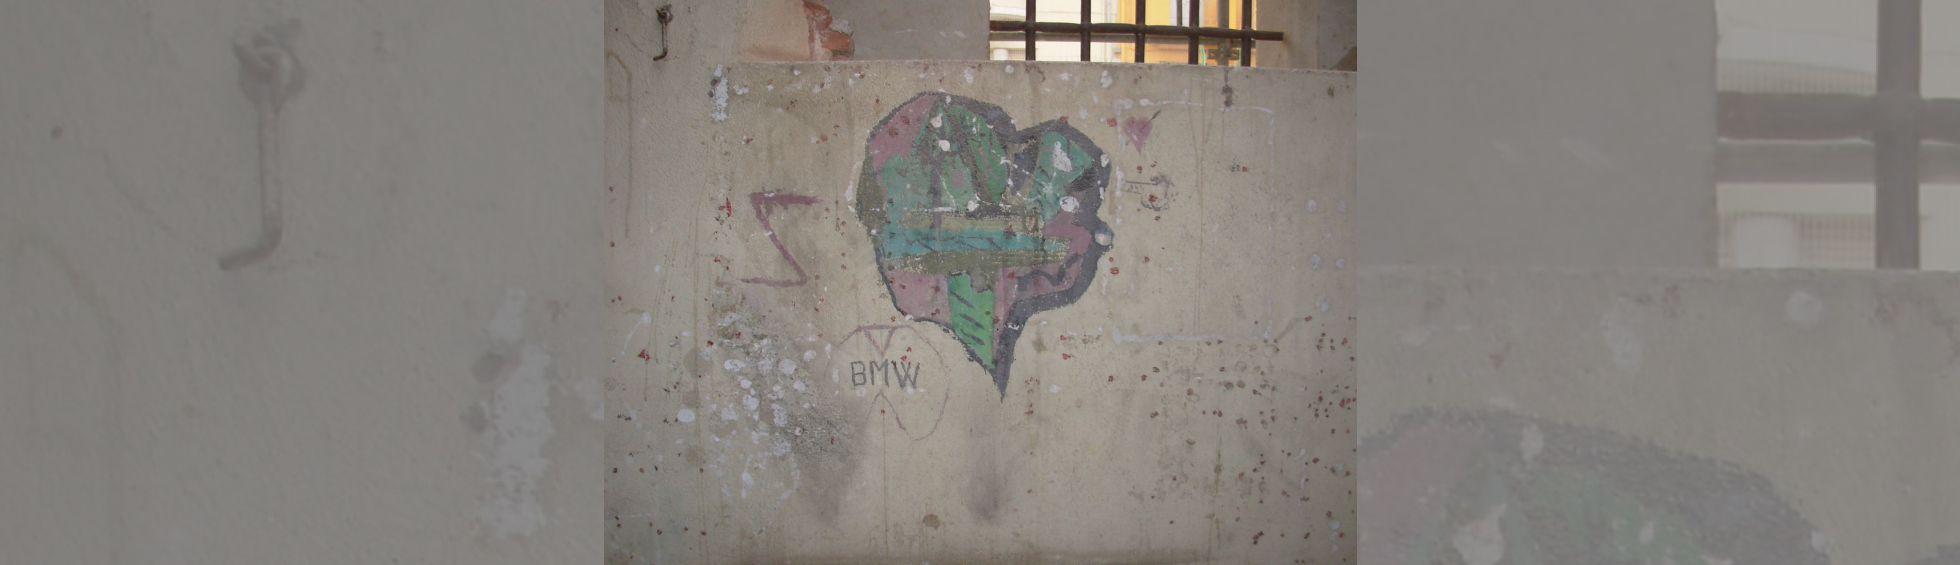 Graffiti dans une cellule de la prison représentant un coeur coloréet et la marque BMW 